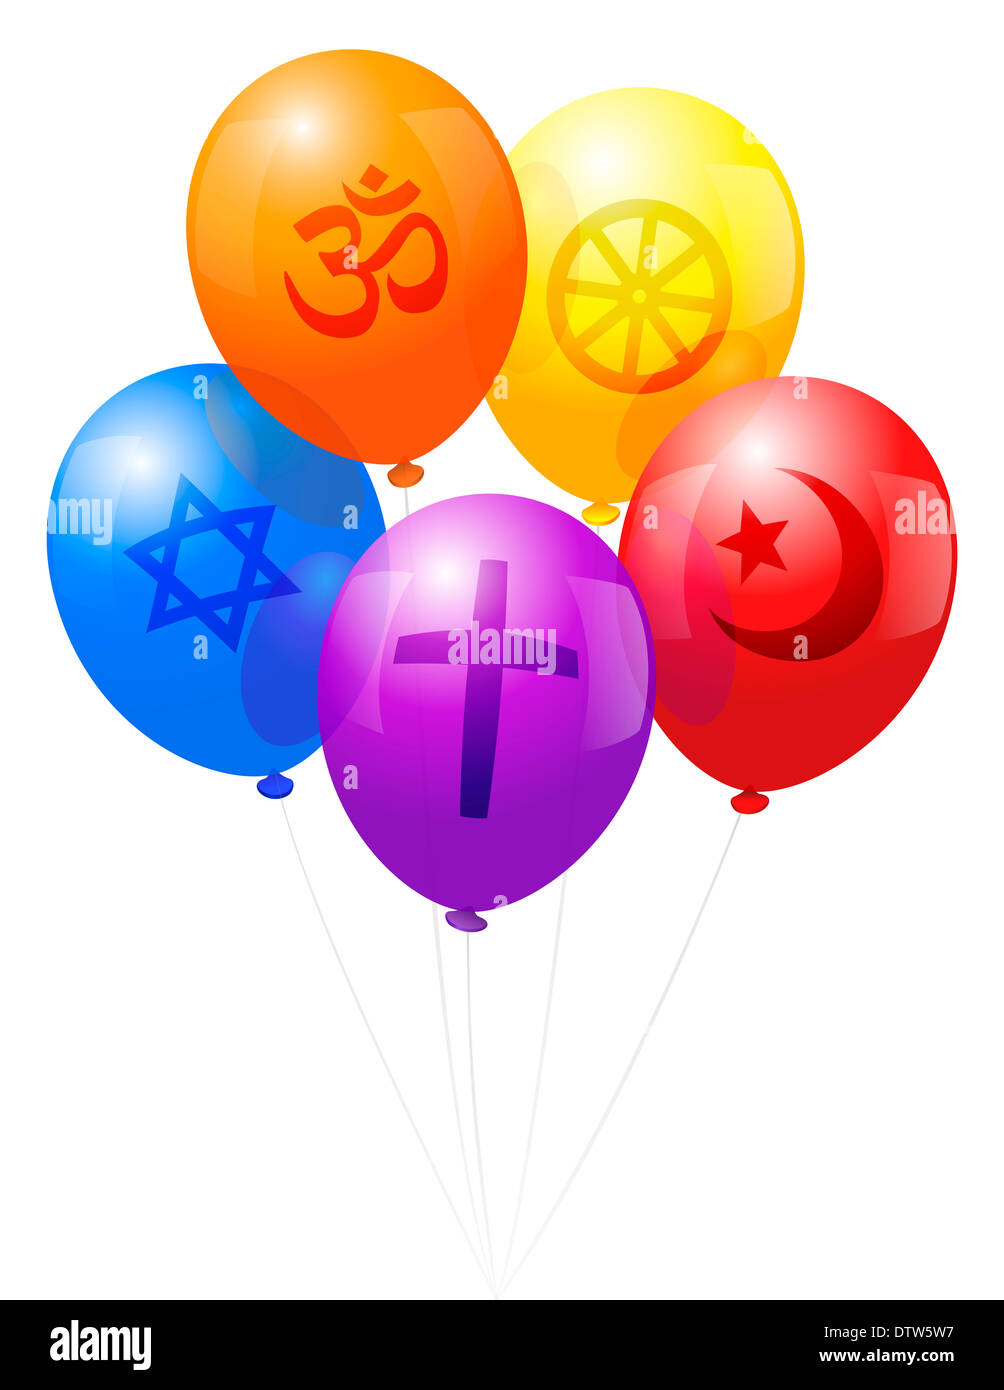 Cinq ballons, qui portent une des cinq grandes religions du monde : le christianisme, l'hindouisme, le judaïsme, l'Islam et le bouddhisme. Banque D'Images